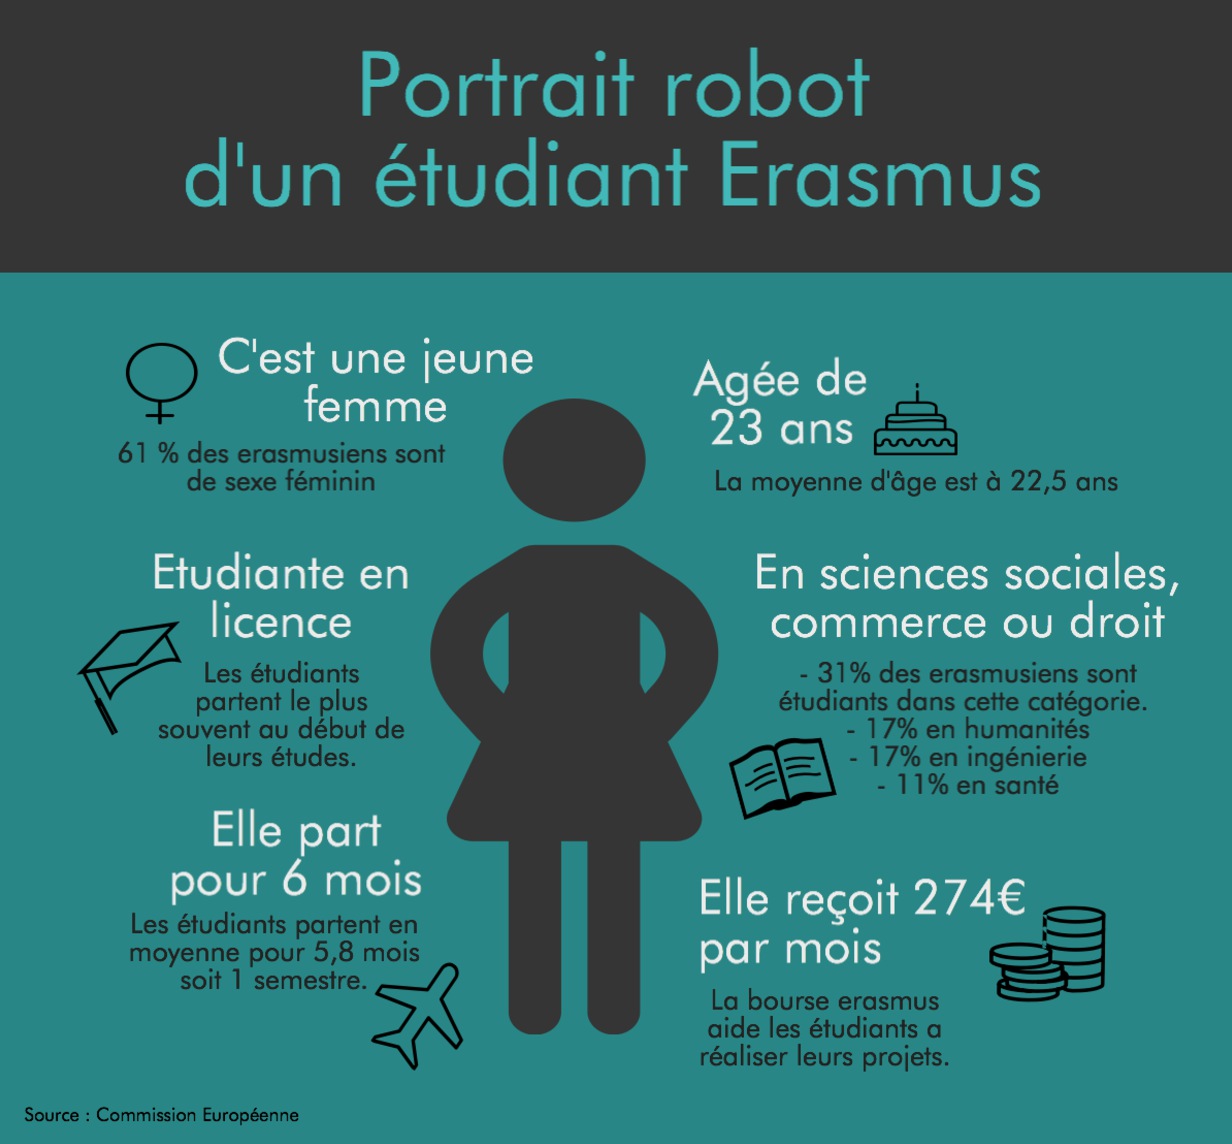 Erasmus portrait robot étudiant